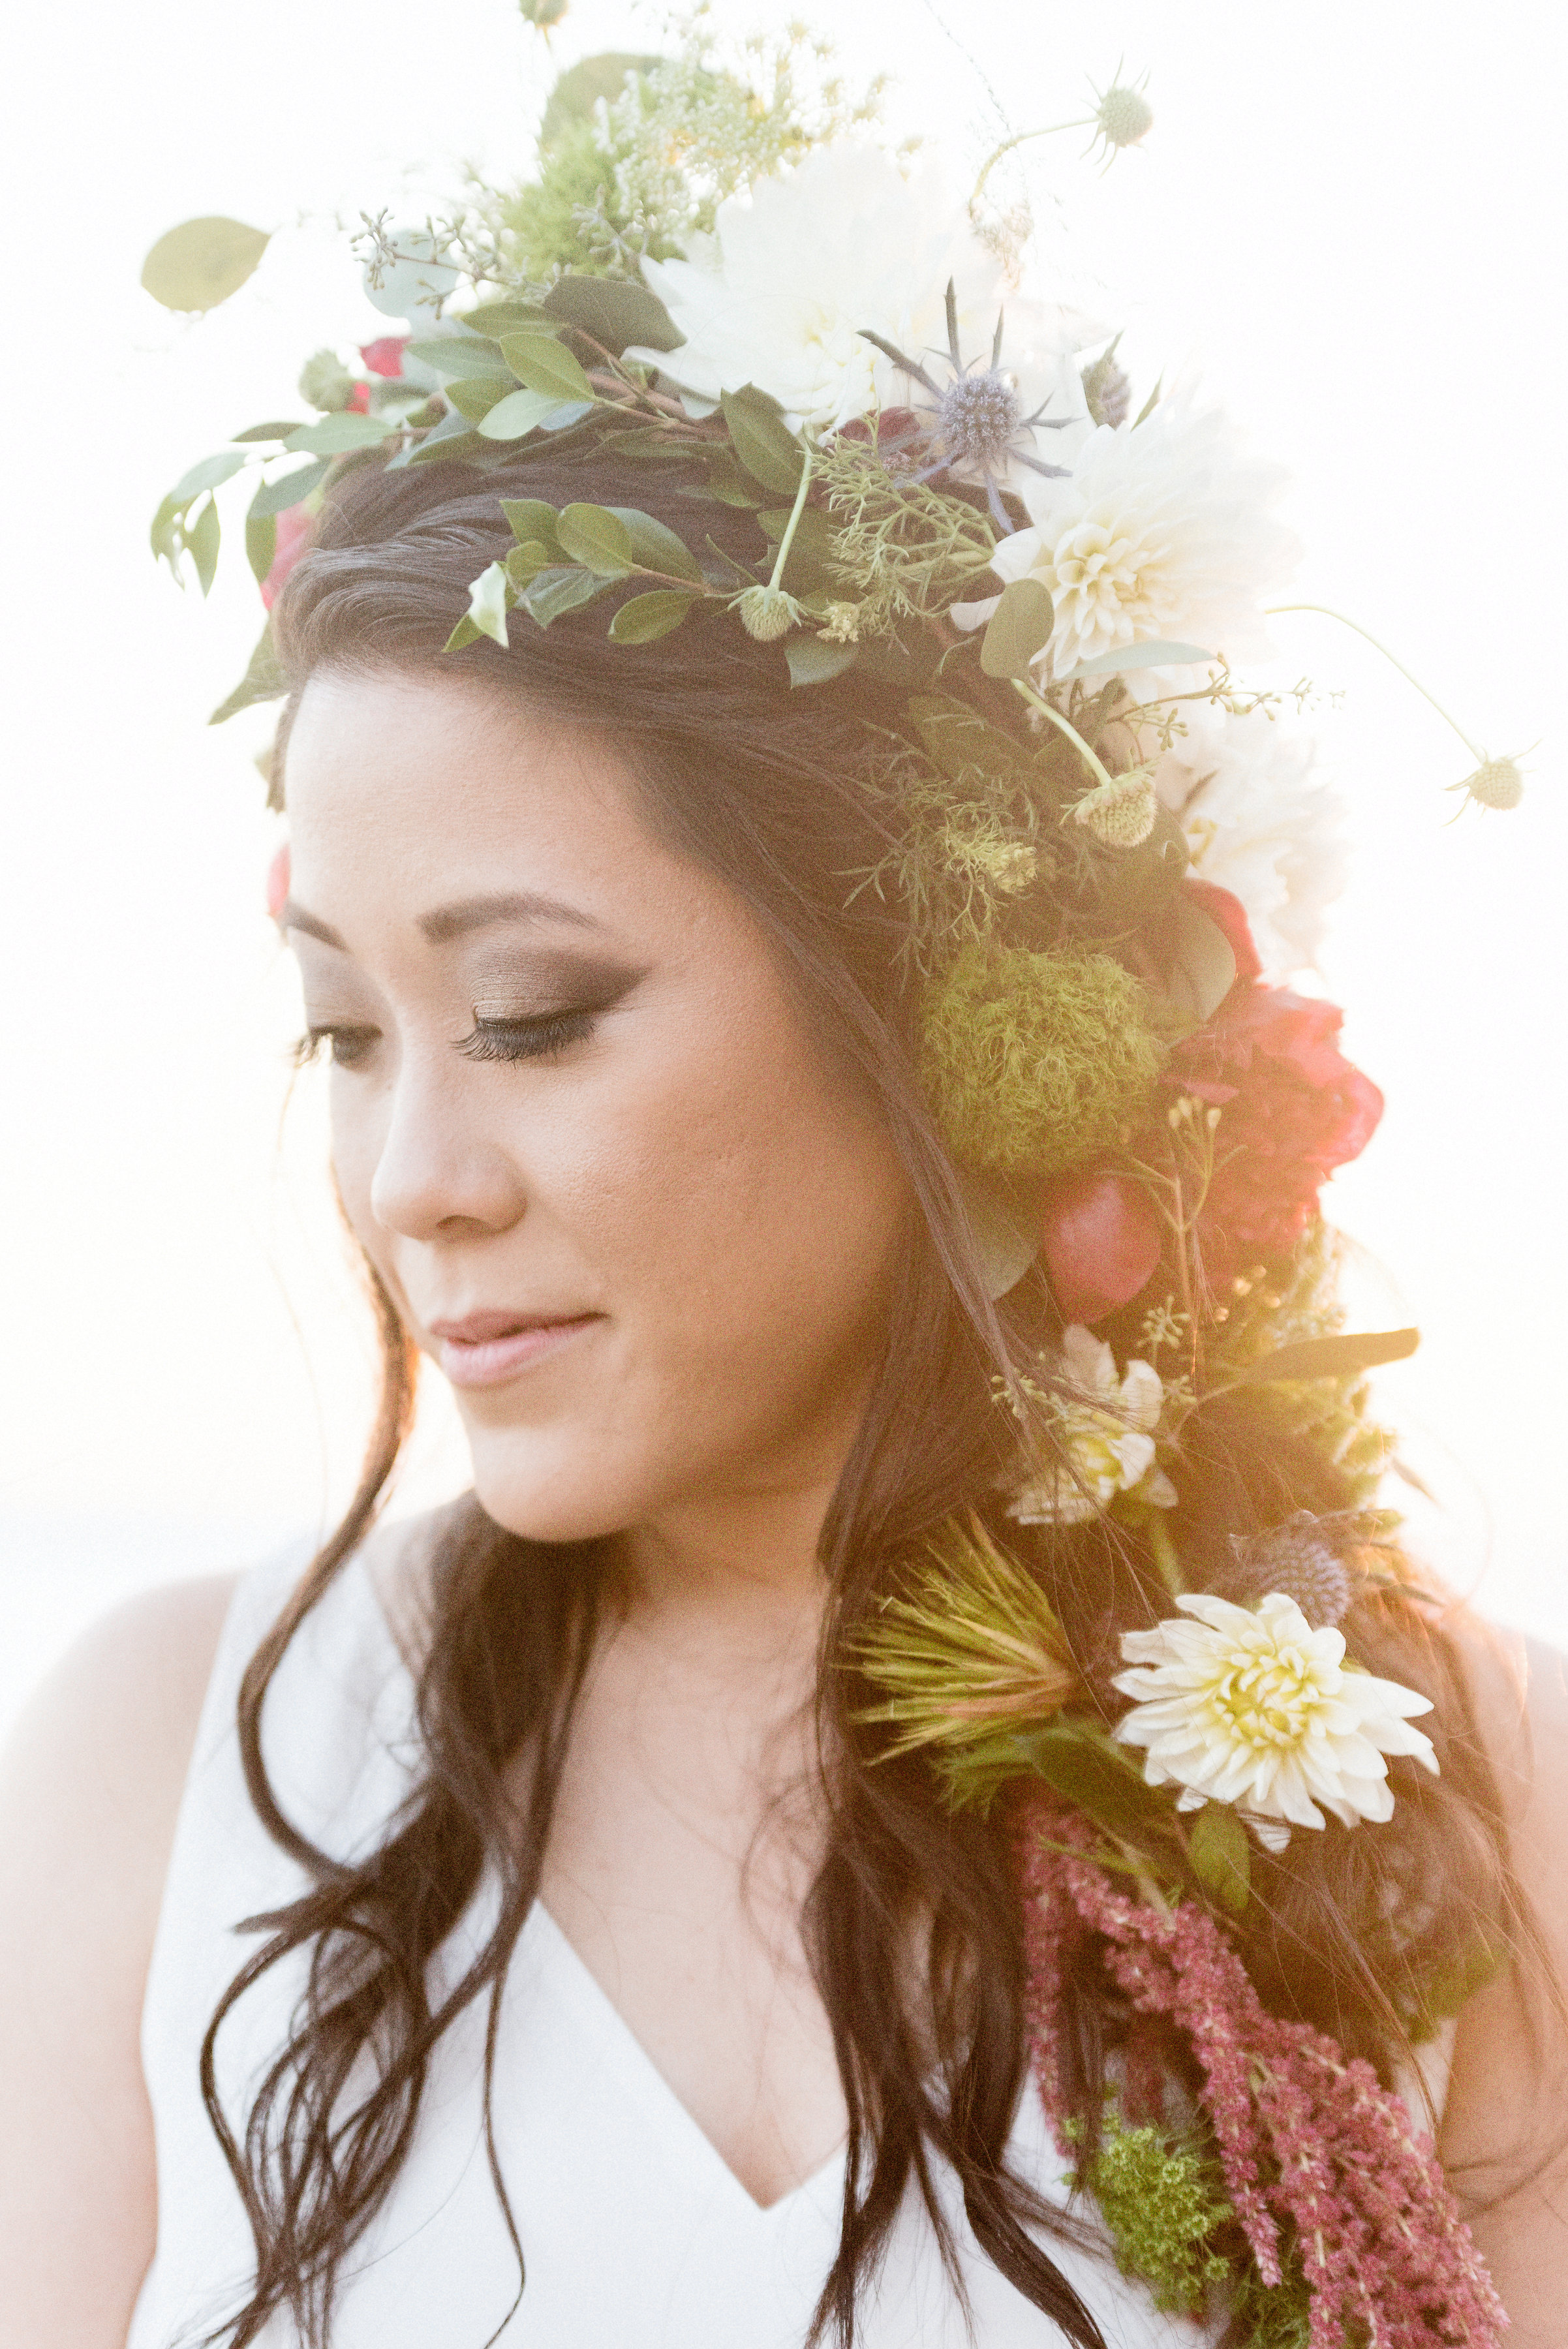 San Diego Portrait Photography | Flower Crown | Solana Beach | Tulle Skirt